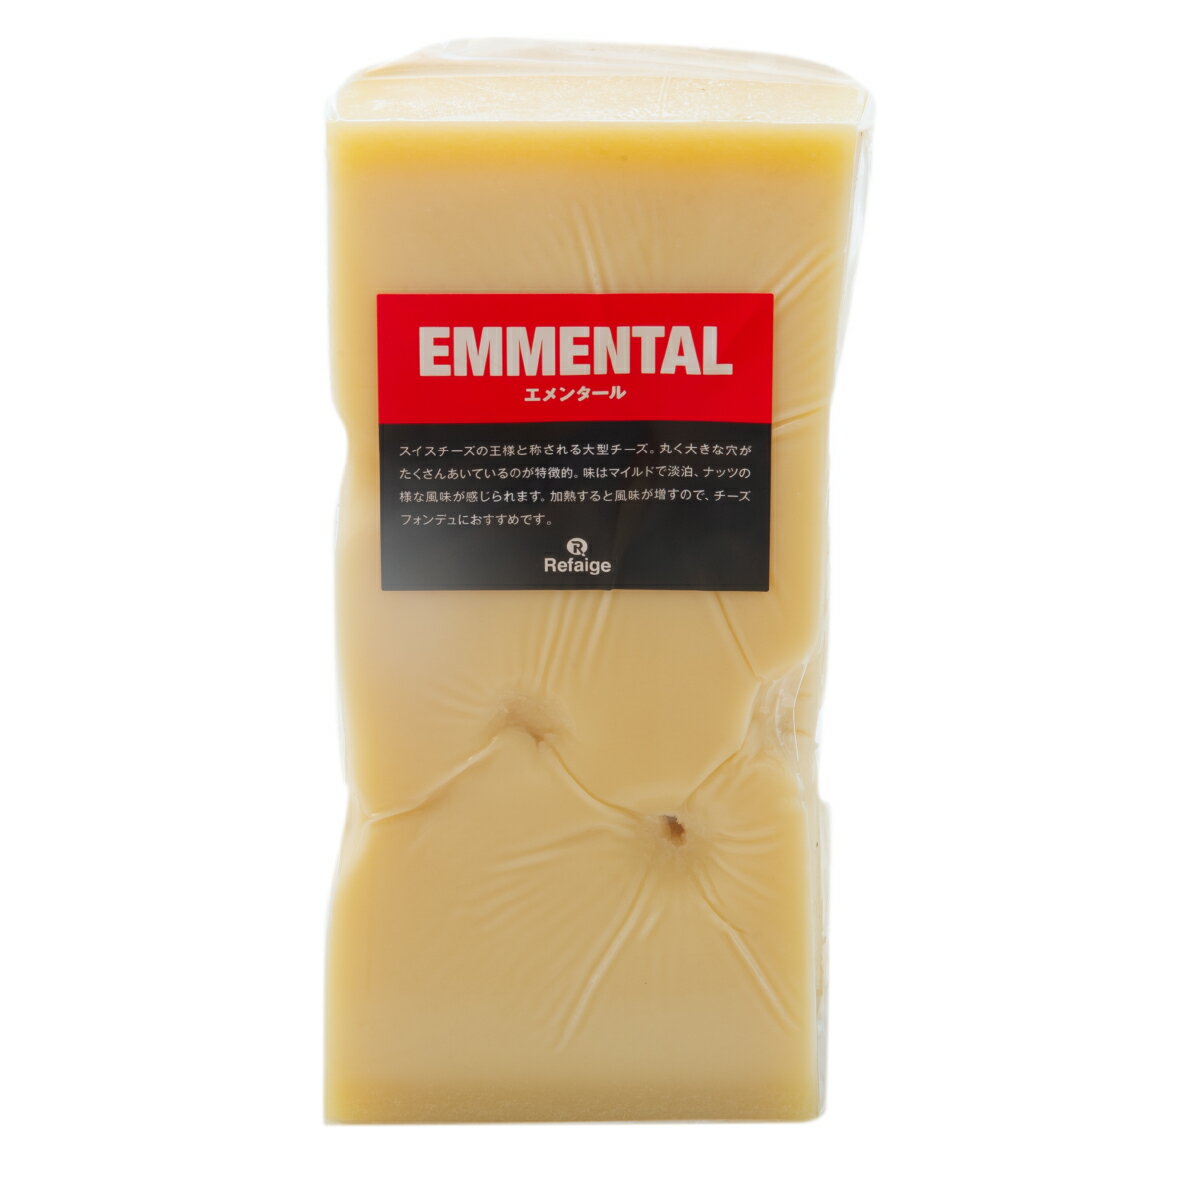 エメンタール エメンタールはグリュイエールと並んでスイスを代表する大型チーズです。 大量の牛乳を使って作る巨大なチーズで、味はマイルドで淡泊、ほんのり香るナッツのような味わいが特徴です。EUのAOPに登録されているので、スイス以外では産地を書くものと定められています。見た目は発行の段階で発生する穴（チーズアイ）が特徴で、アニメなどでは穴あきチーズとしても有名です。そのまま食べられますが、火を通すとさらに風味が増し、よりコクが出てきます。おすすめはなんといってもグリュイエールと共に溶かしてチーズフォンデュです！ 種類別 ナチュラルチーズ 原材料名 生乳、食塩 原産国 スイス 内容量 約1kg タイプ ハード 加工 カット 料理 チーズフォンデュやキッシュなど 合うお酒 フルーティーな白ワインや紅茶等にも 個性 ★★☆ 塩味 ★☆☆ 配送 クール便（商品は真空パック） 賞味期限 お届け後40日以上（未開封時） 保存方法 要冷蔵(10℃以下)乾燥が大敵。 密閉容器にいれて冷蔵庫の野菜室で保存がおすすめです。 開封後は賞味期限に関わらずお早めにお召し上がりください。 栄養成分表示 熱量401kcal、たんぱく質29.0g、脂質31.0g、炭水化物1.0g、食塩相当量0.5g＊100gあたり／推定値 製造・販売者 株式会社リフェージュ　／　埼玉県戸田市美女木5-21-7 ＜仕入・製造・検査・出荷まで自社工場一貫体制にて行っております。＞ 不定貫商品について 1kgあたり税込5,052円にて再計算させて頂きます。